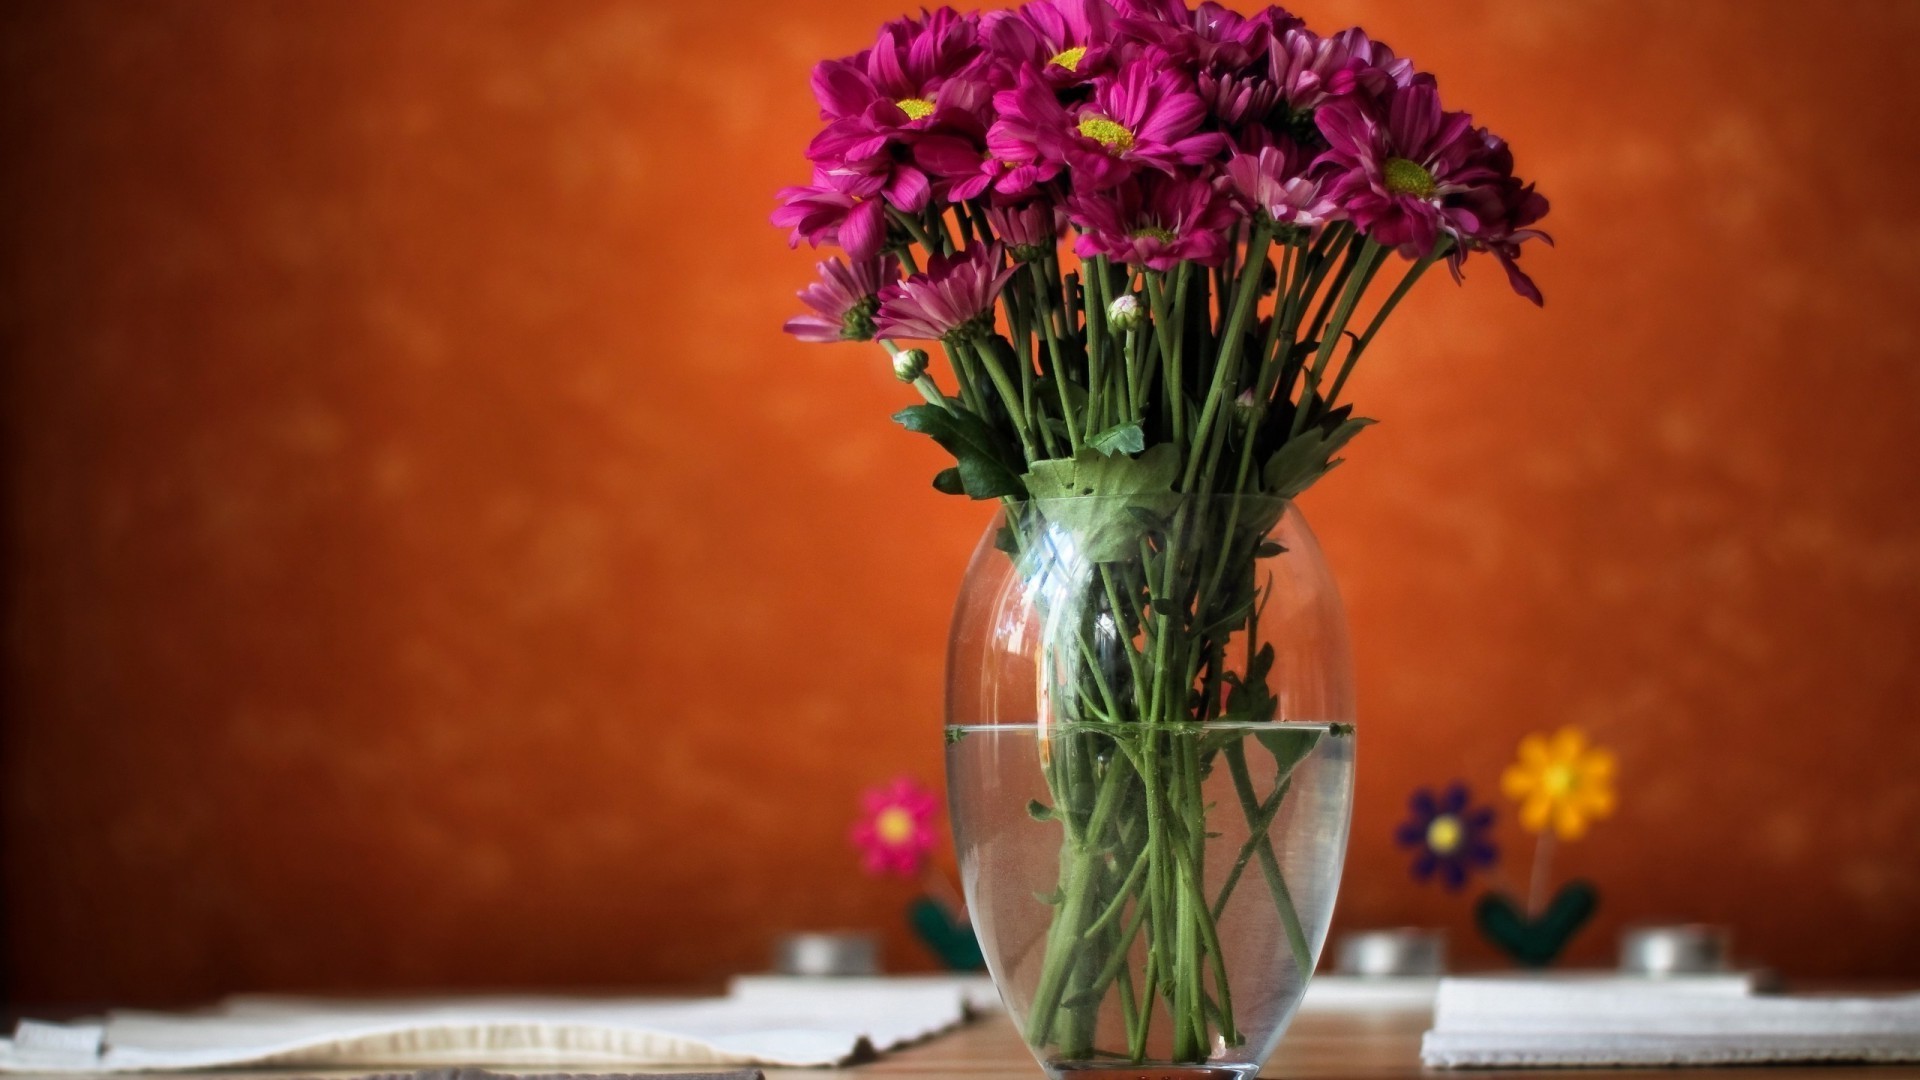 в вазе или горшке цветок ваза природа букет лист пасха украшения натюрморт флора романтика яркий цвет любовь цветочные лето